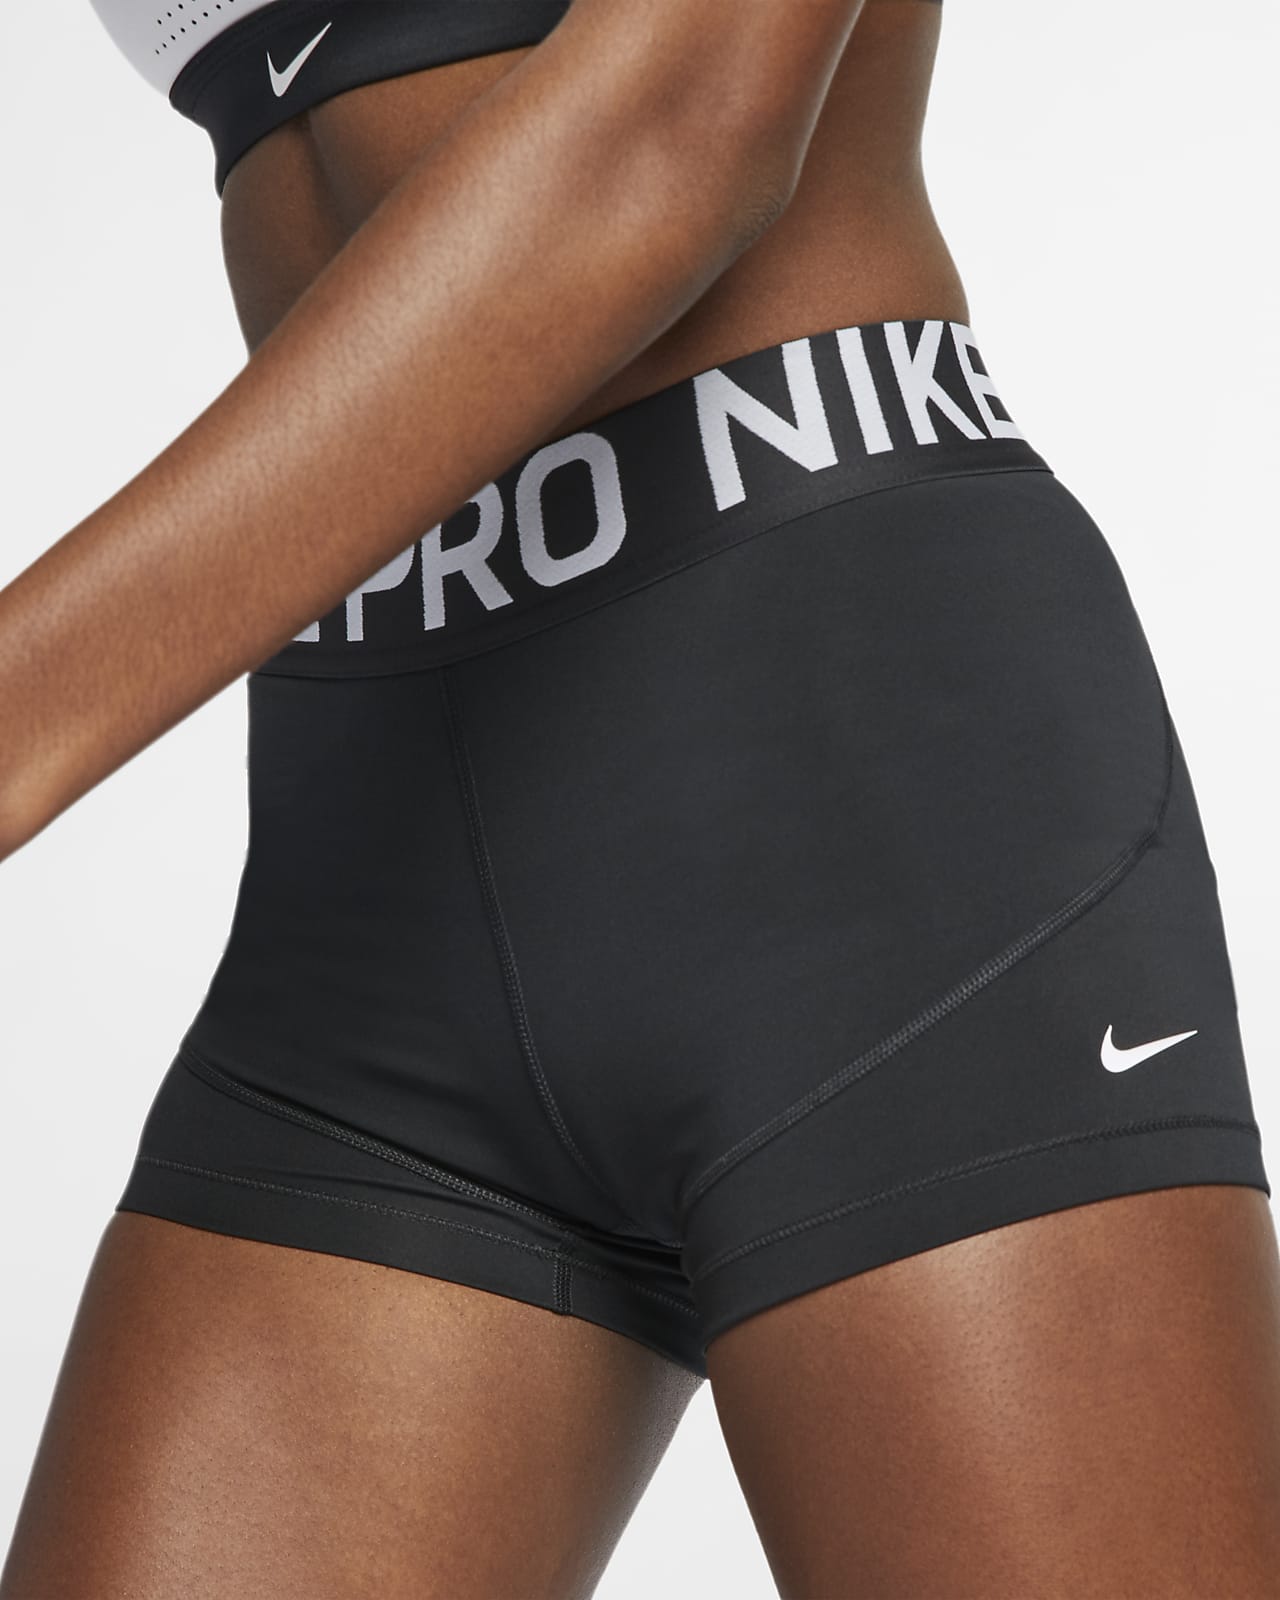 Nike Pro Women's 3\